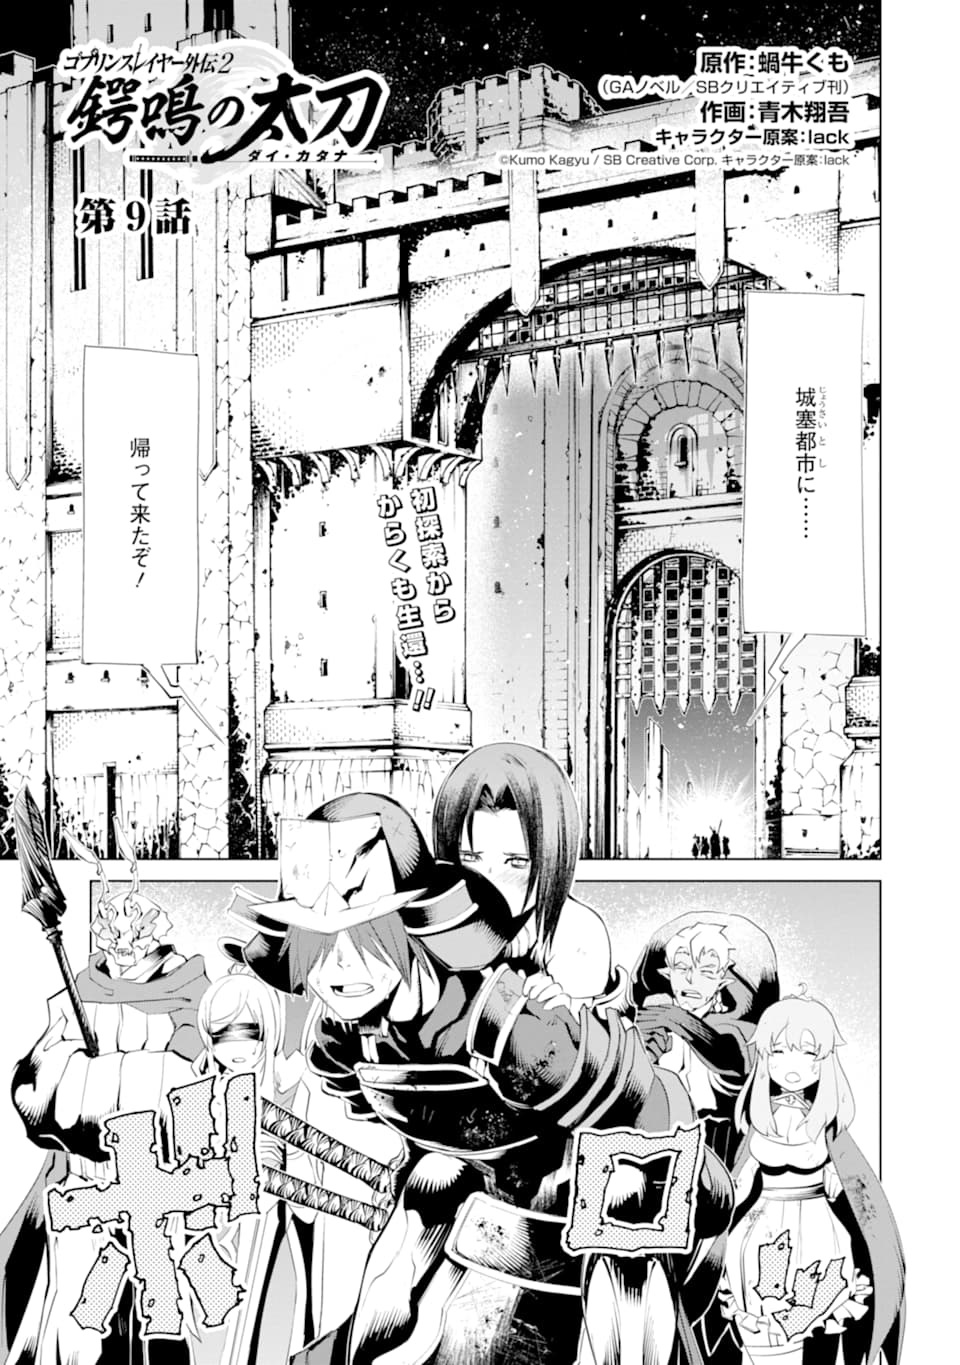 Dai Katana Manga Chapter 9 Goblin Slayer Wiki Fandom